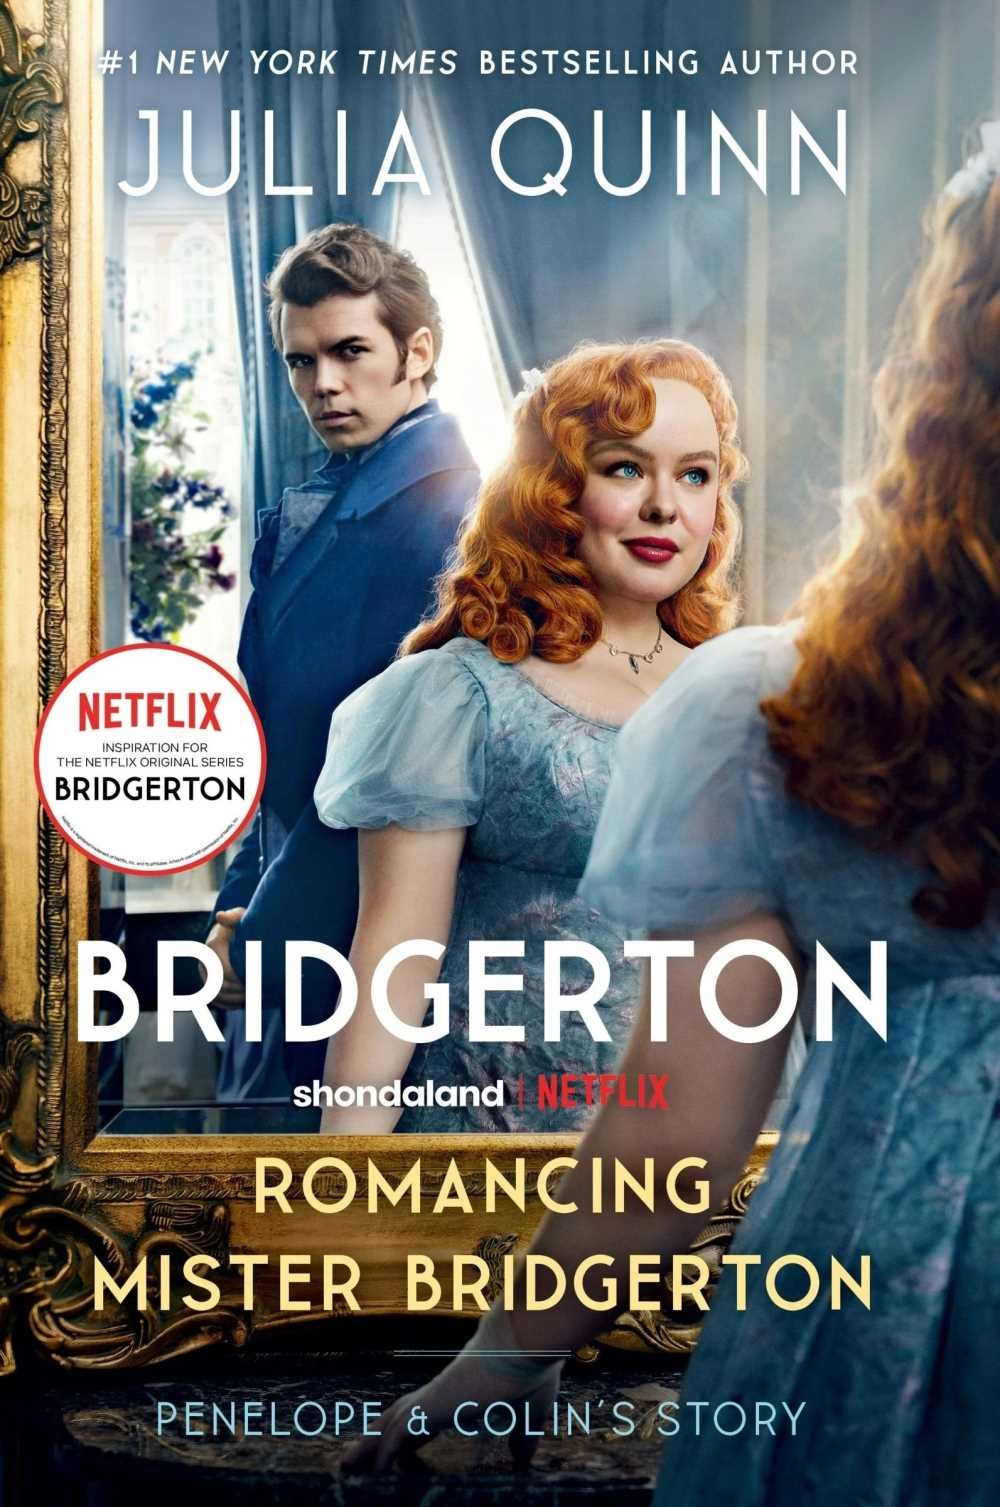 Romancing Mister Bridgerton [TV Tie-in]